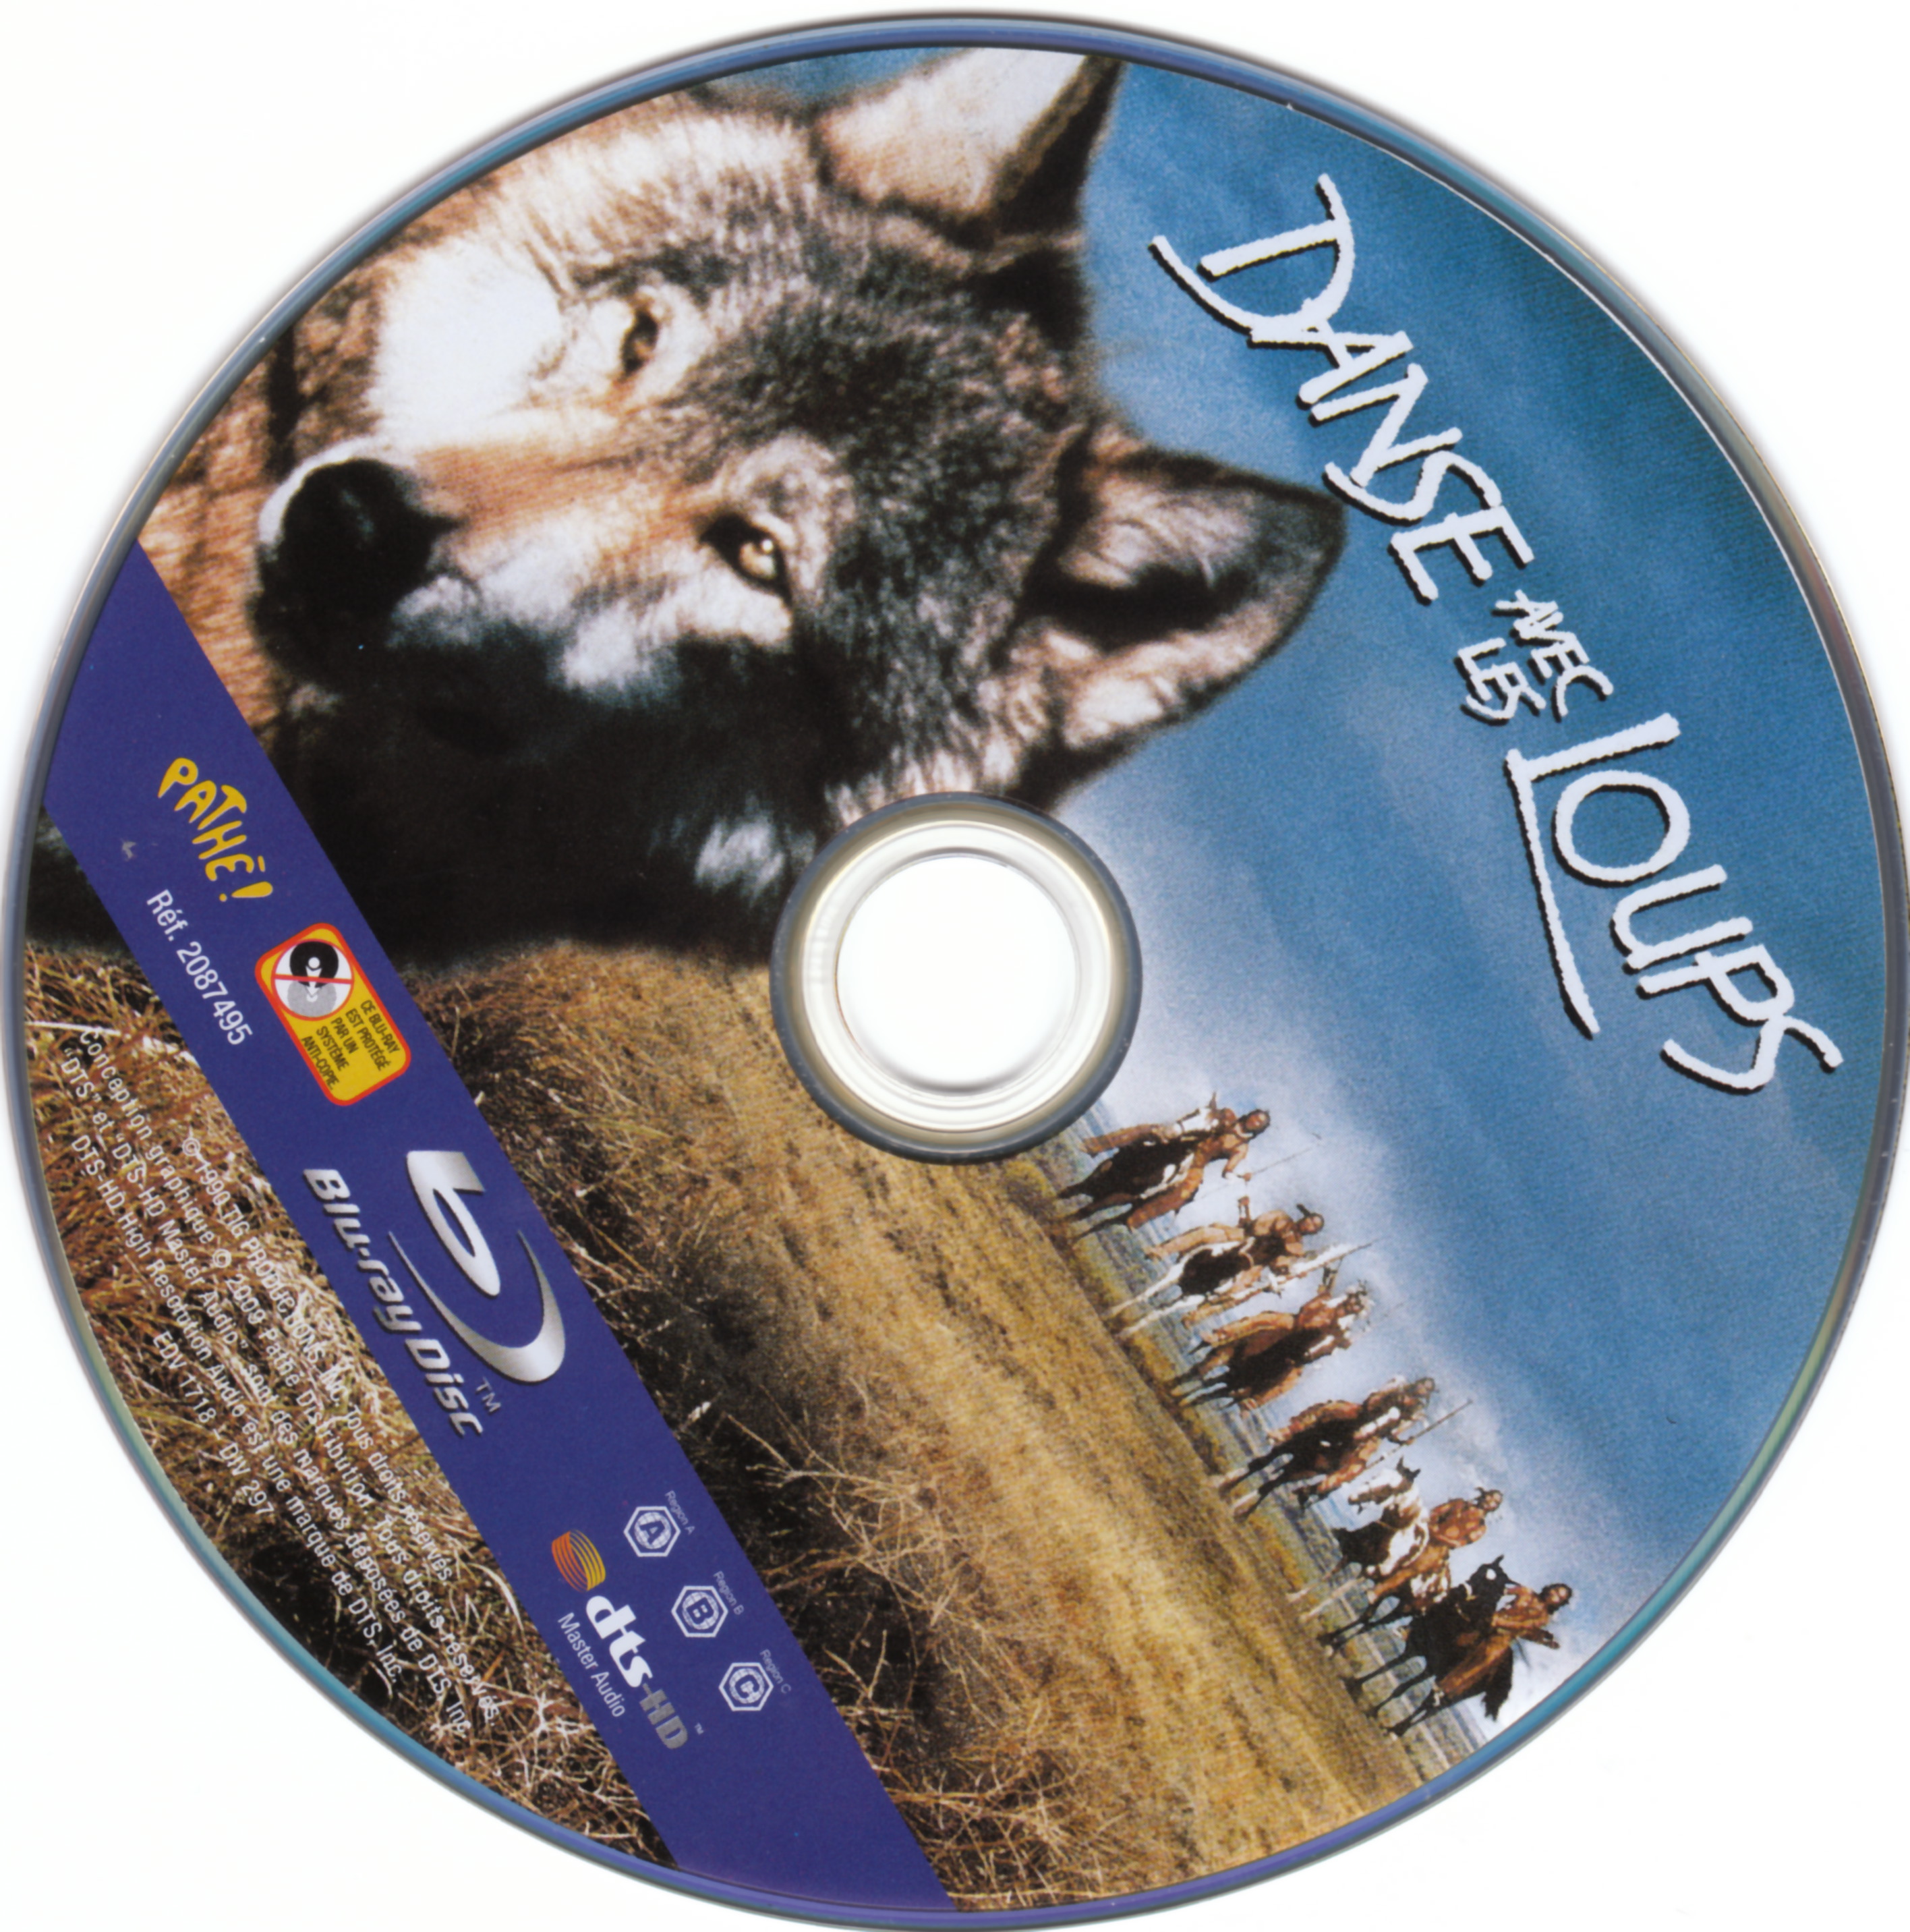 Danse avec les loups à louer en dvd à Marseille : Danse avec les loups :  film en location dvd